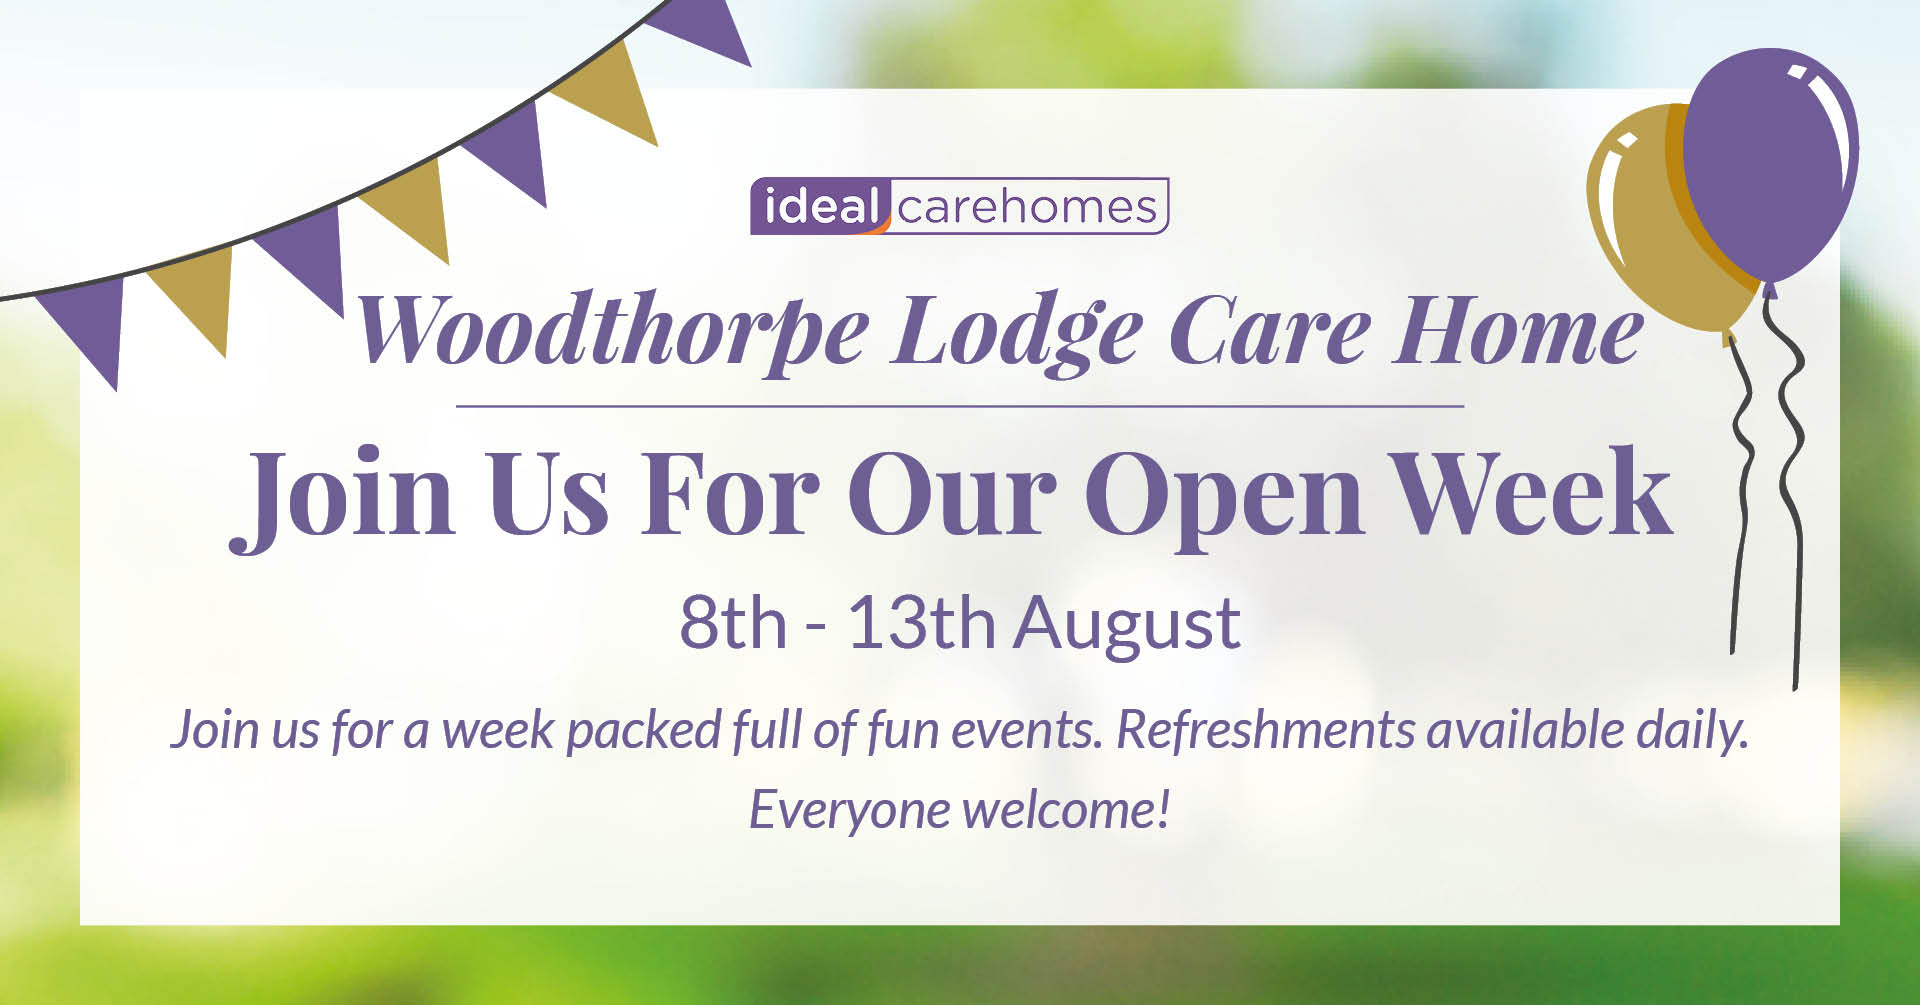 Woodthorpe Lodge Care Home